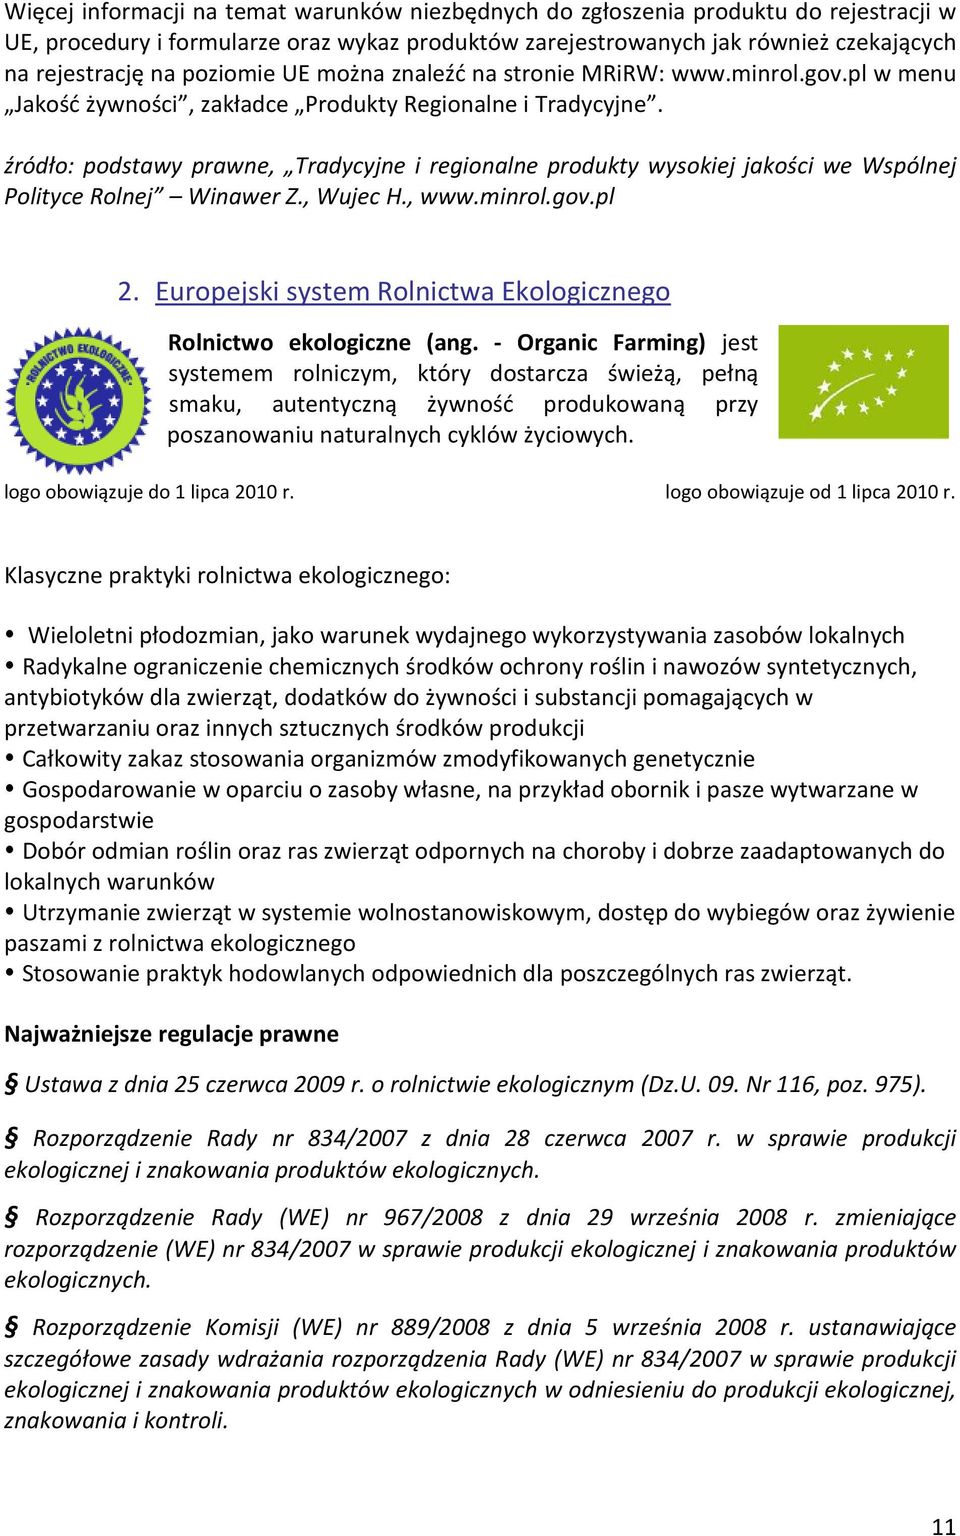 źródło: podstawy prawne, Tradycyjne i regionalne produkty wysokiej jakości we Wspólnej Polityce Rolnej Winawer Z., Wujec H., www.minrol.gov.pl 2.